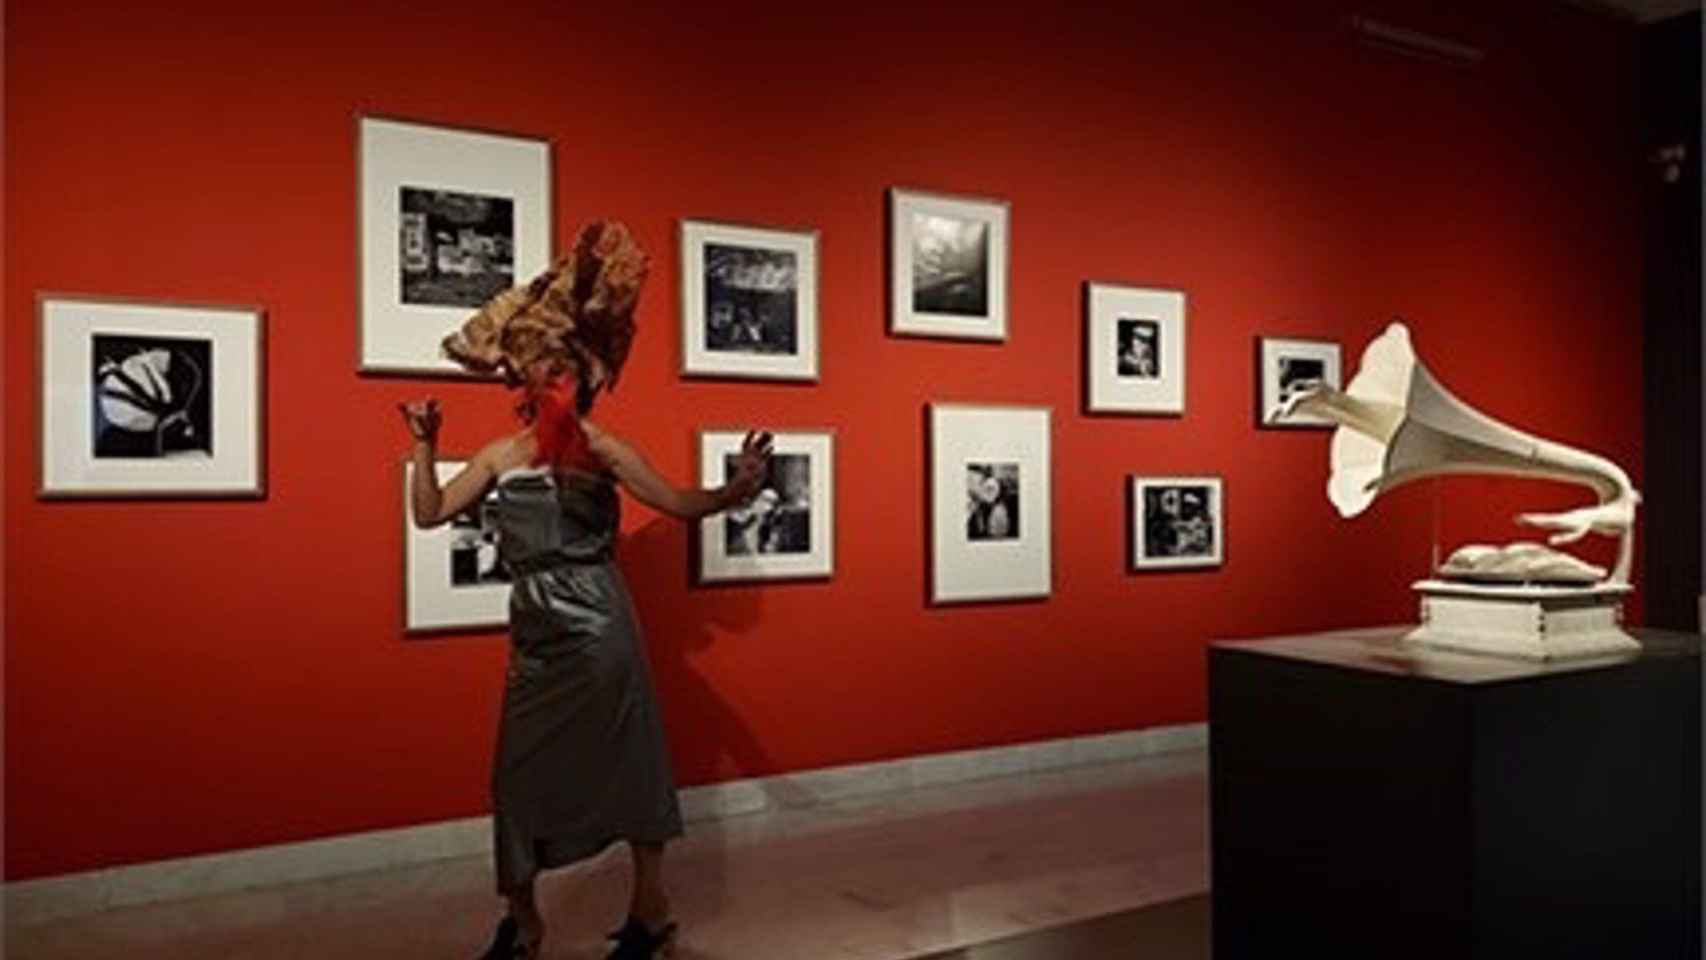 Performance de Sònia Gómez en la exposición 'Jamais' en el Museu Picasso de Barcelona - MUSEU PICASSO